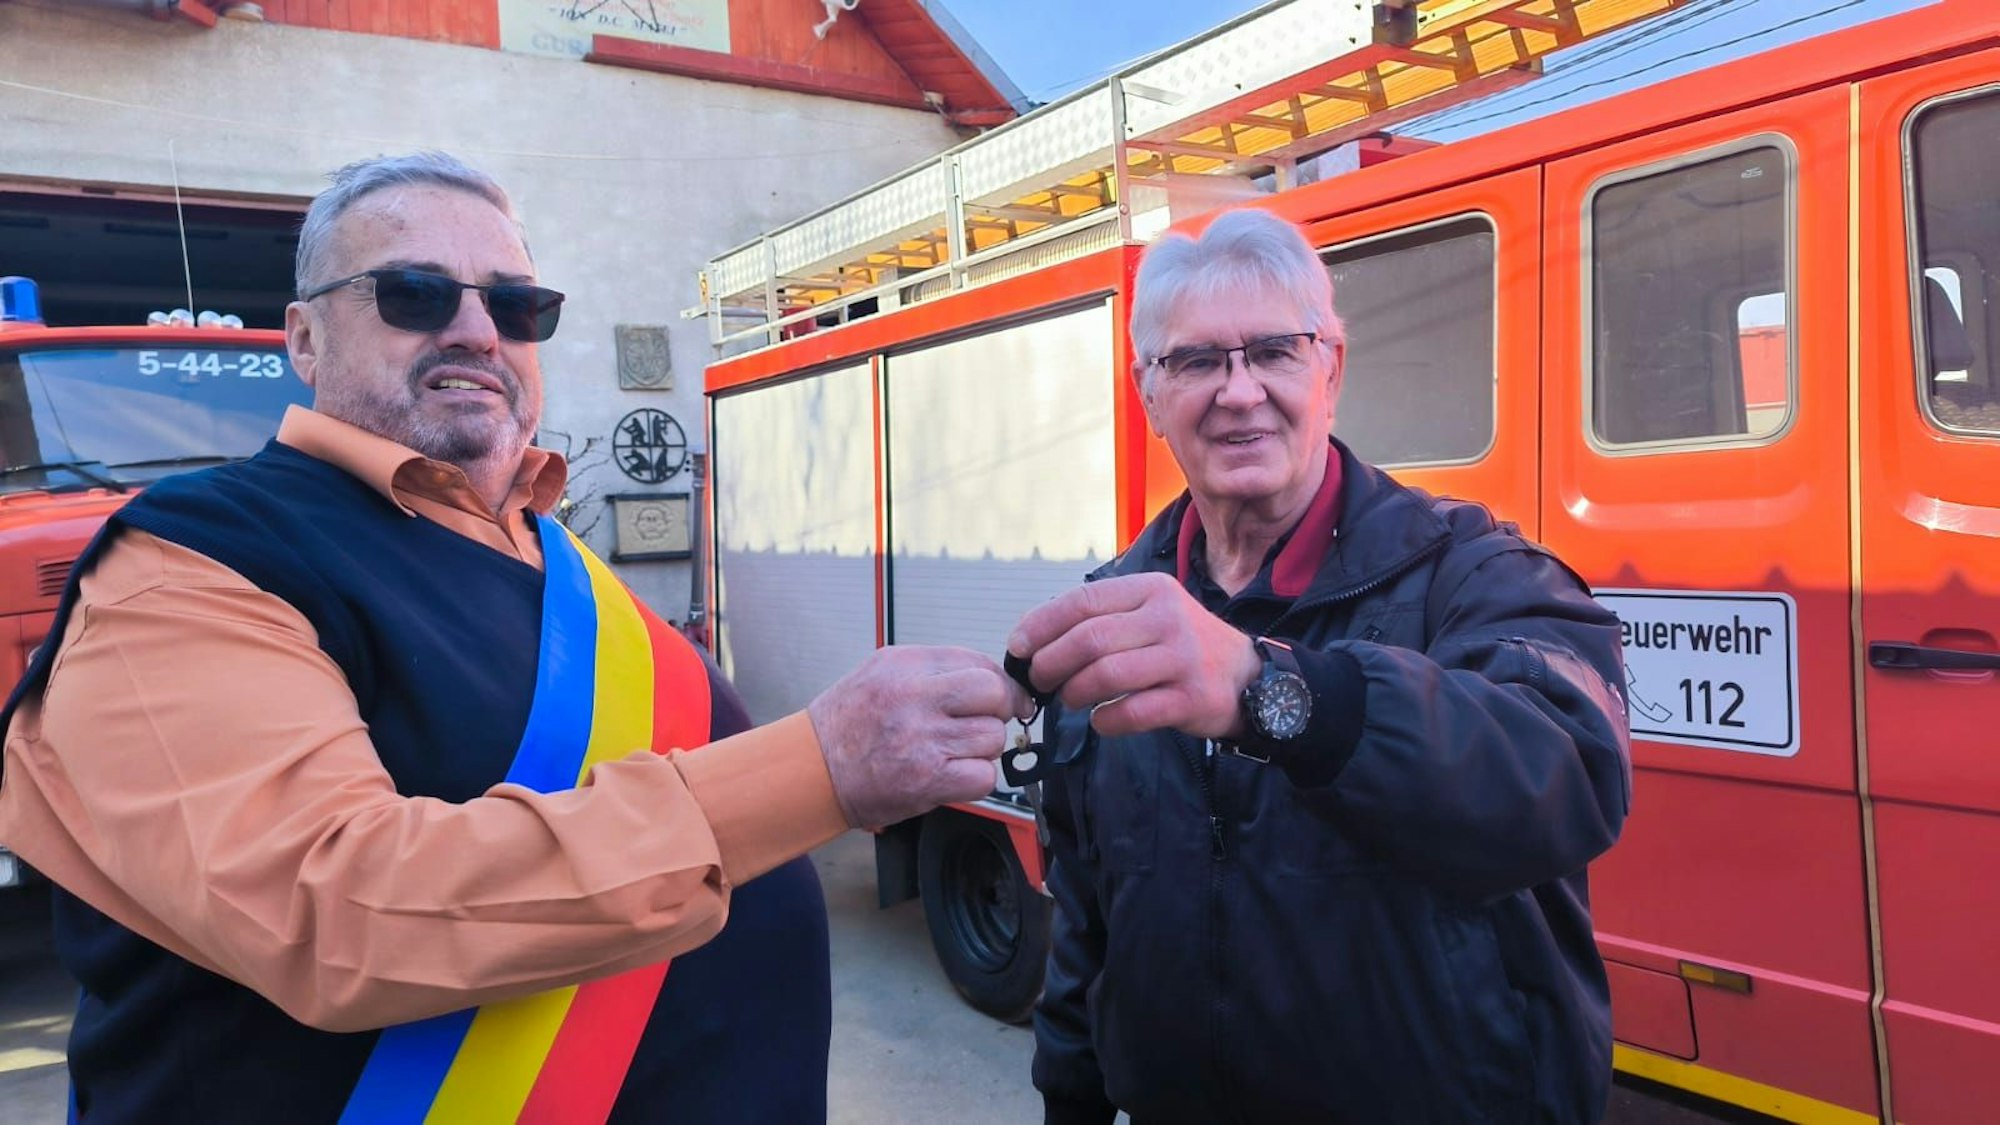 Winfried Dederichs gibt Sorin Ionita Vasile einen Schlüssel. Die beiden stehen vor einem Feuerwehrauto, Vasile trägt eine Schärpe in den Farben der rumänischen Flagge.